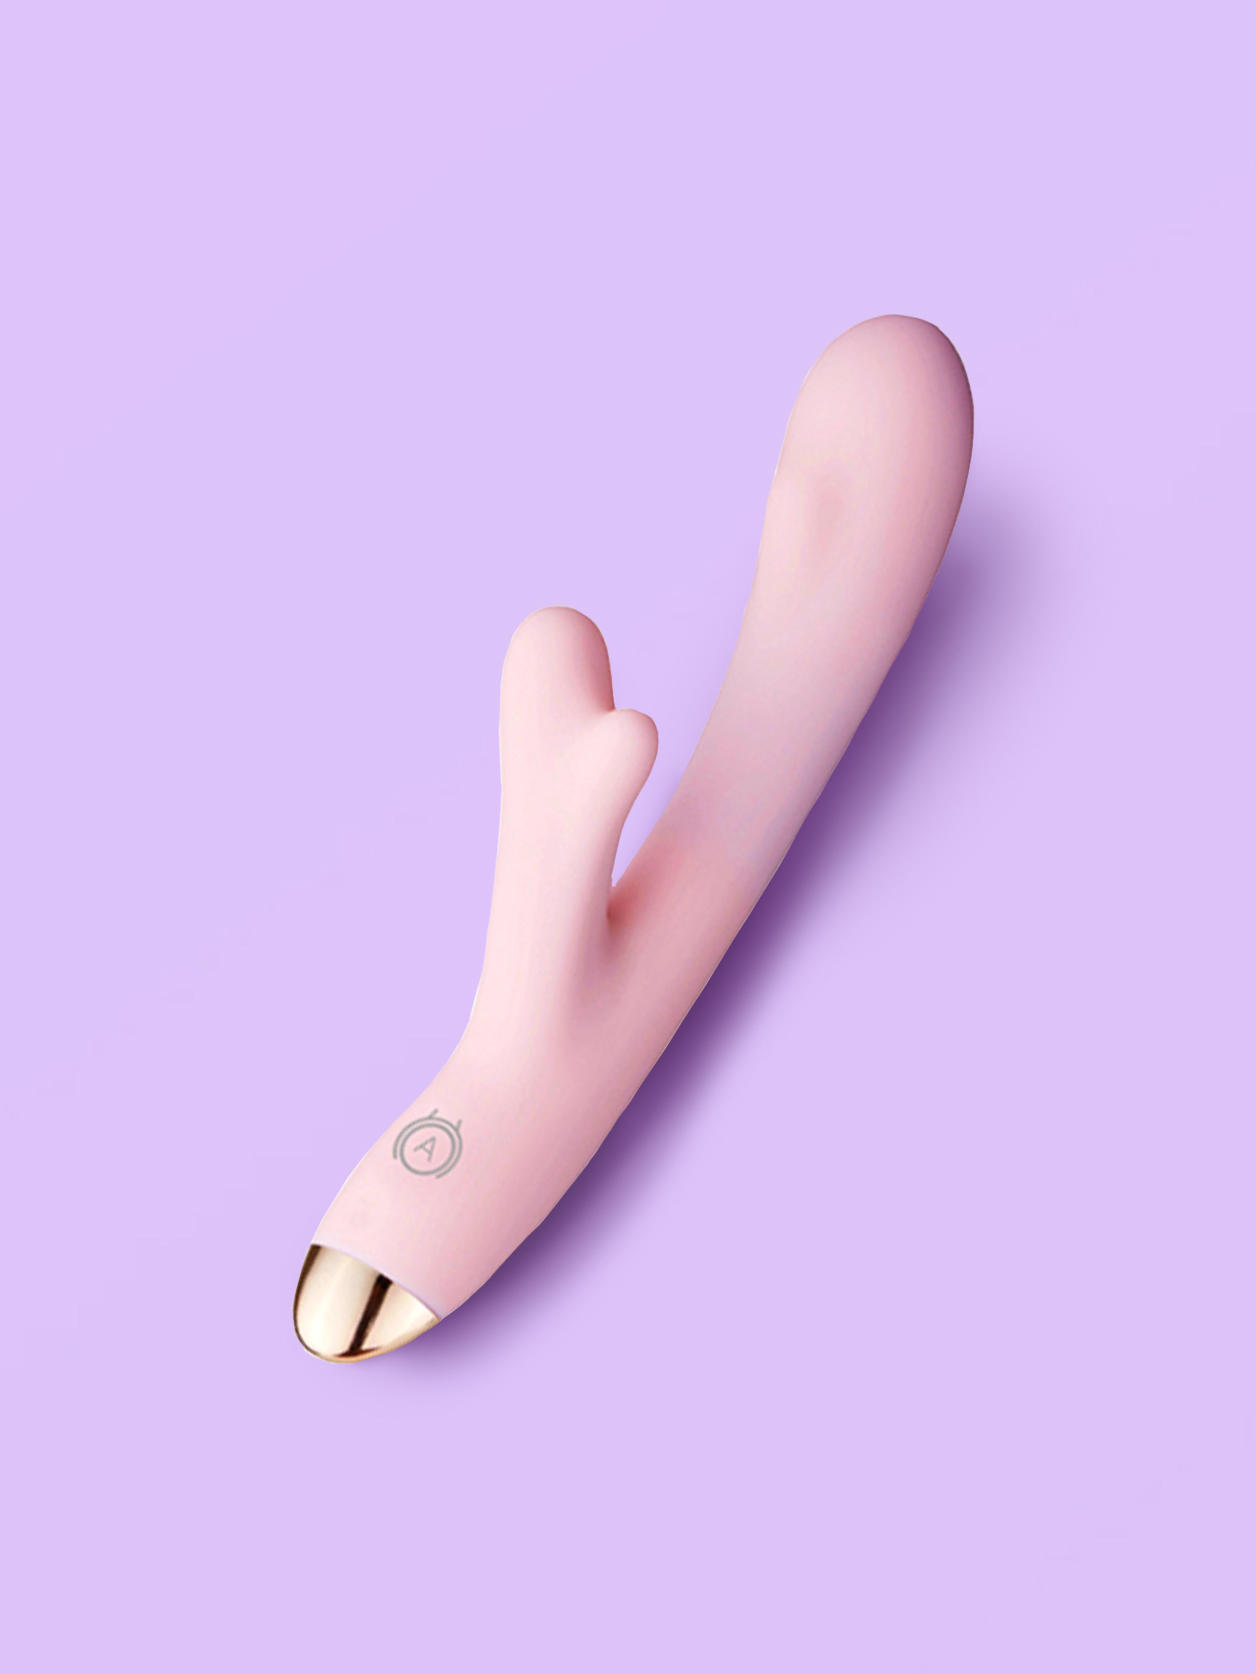 Новая игрушка доставляет женщине приятных ощущений в постели онлайн